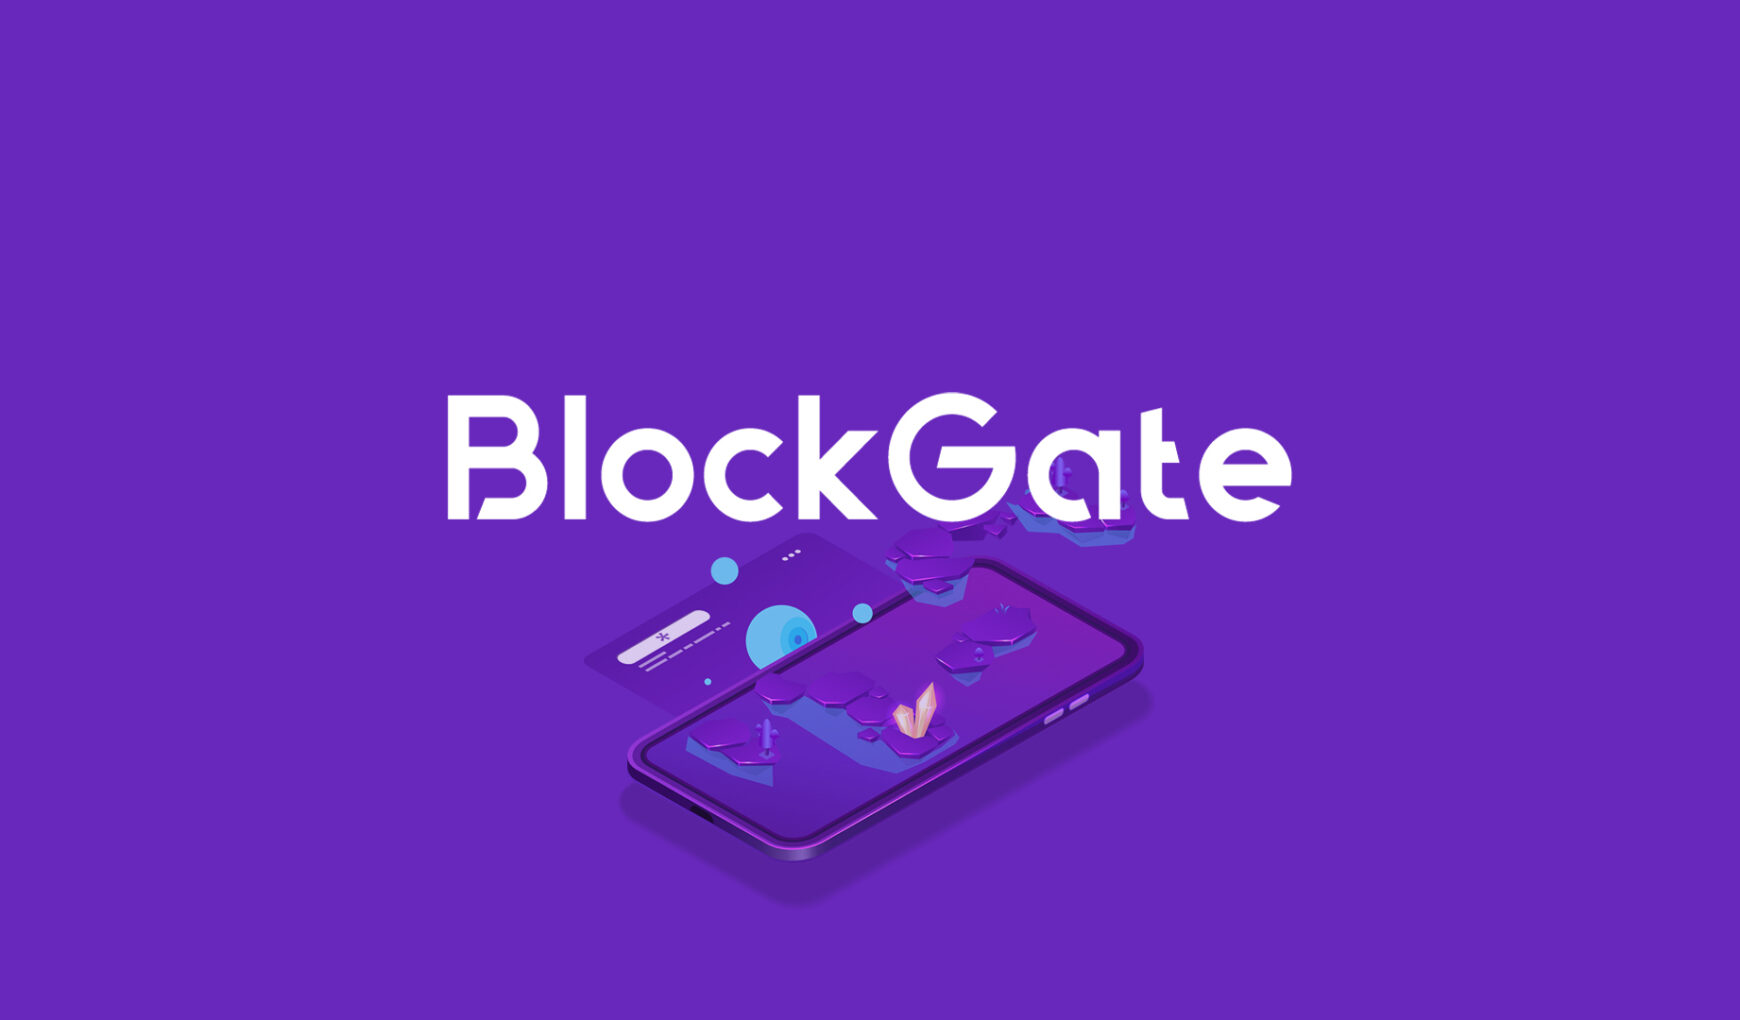 blockchain-tabanli-mobil-oyun-girisimi-blockgate-5-milyon-dolar-degerleme-uzerinden-yatirim-aldi